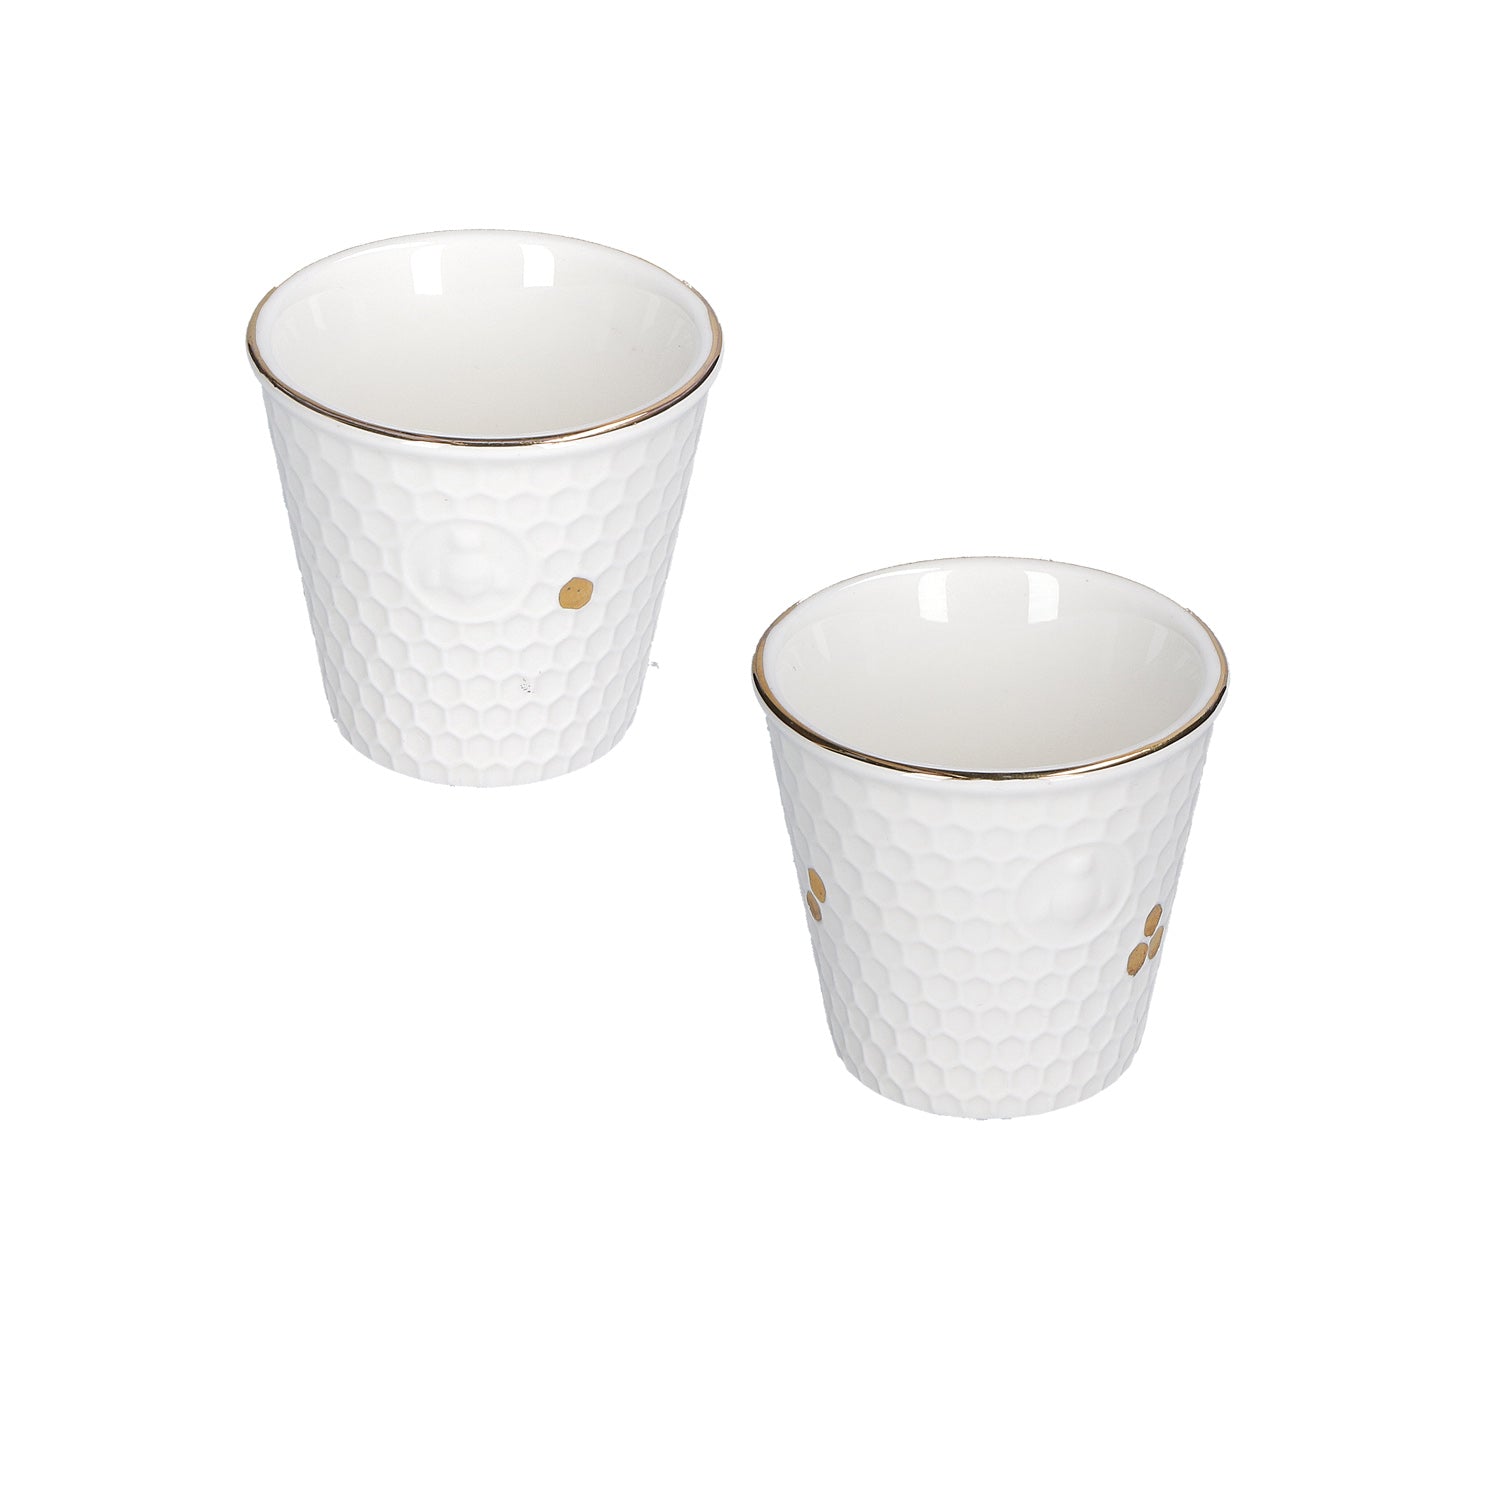 Set di 2 bicchieri in porcellana bianca con decorazioni dorate. Dimensioni: 6 x h 5,5 cm Lavare a mano.